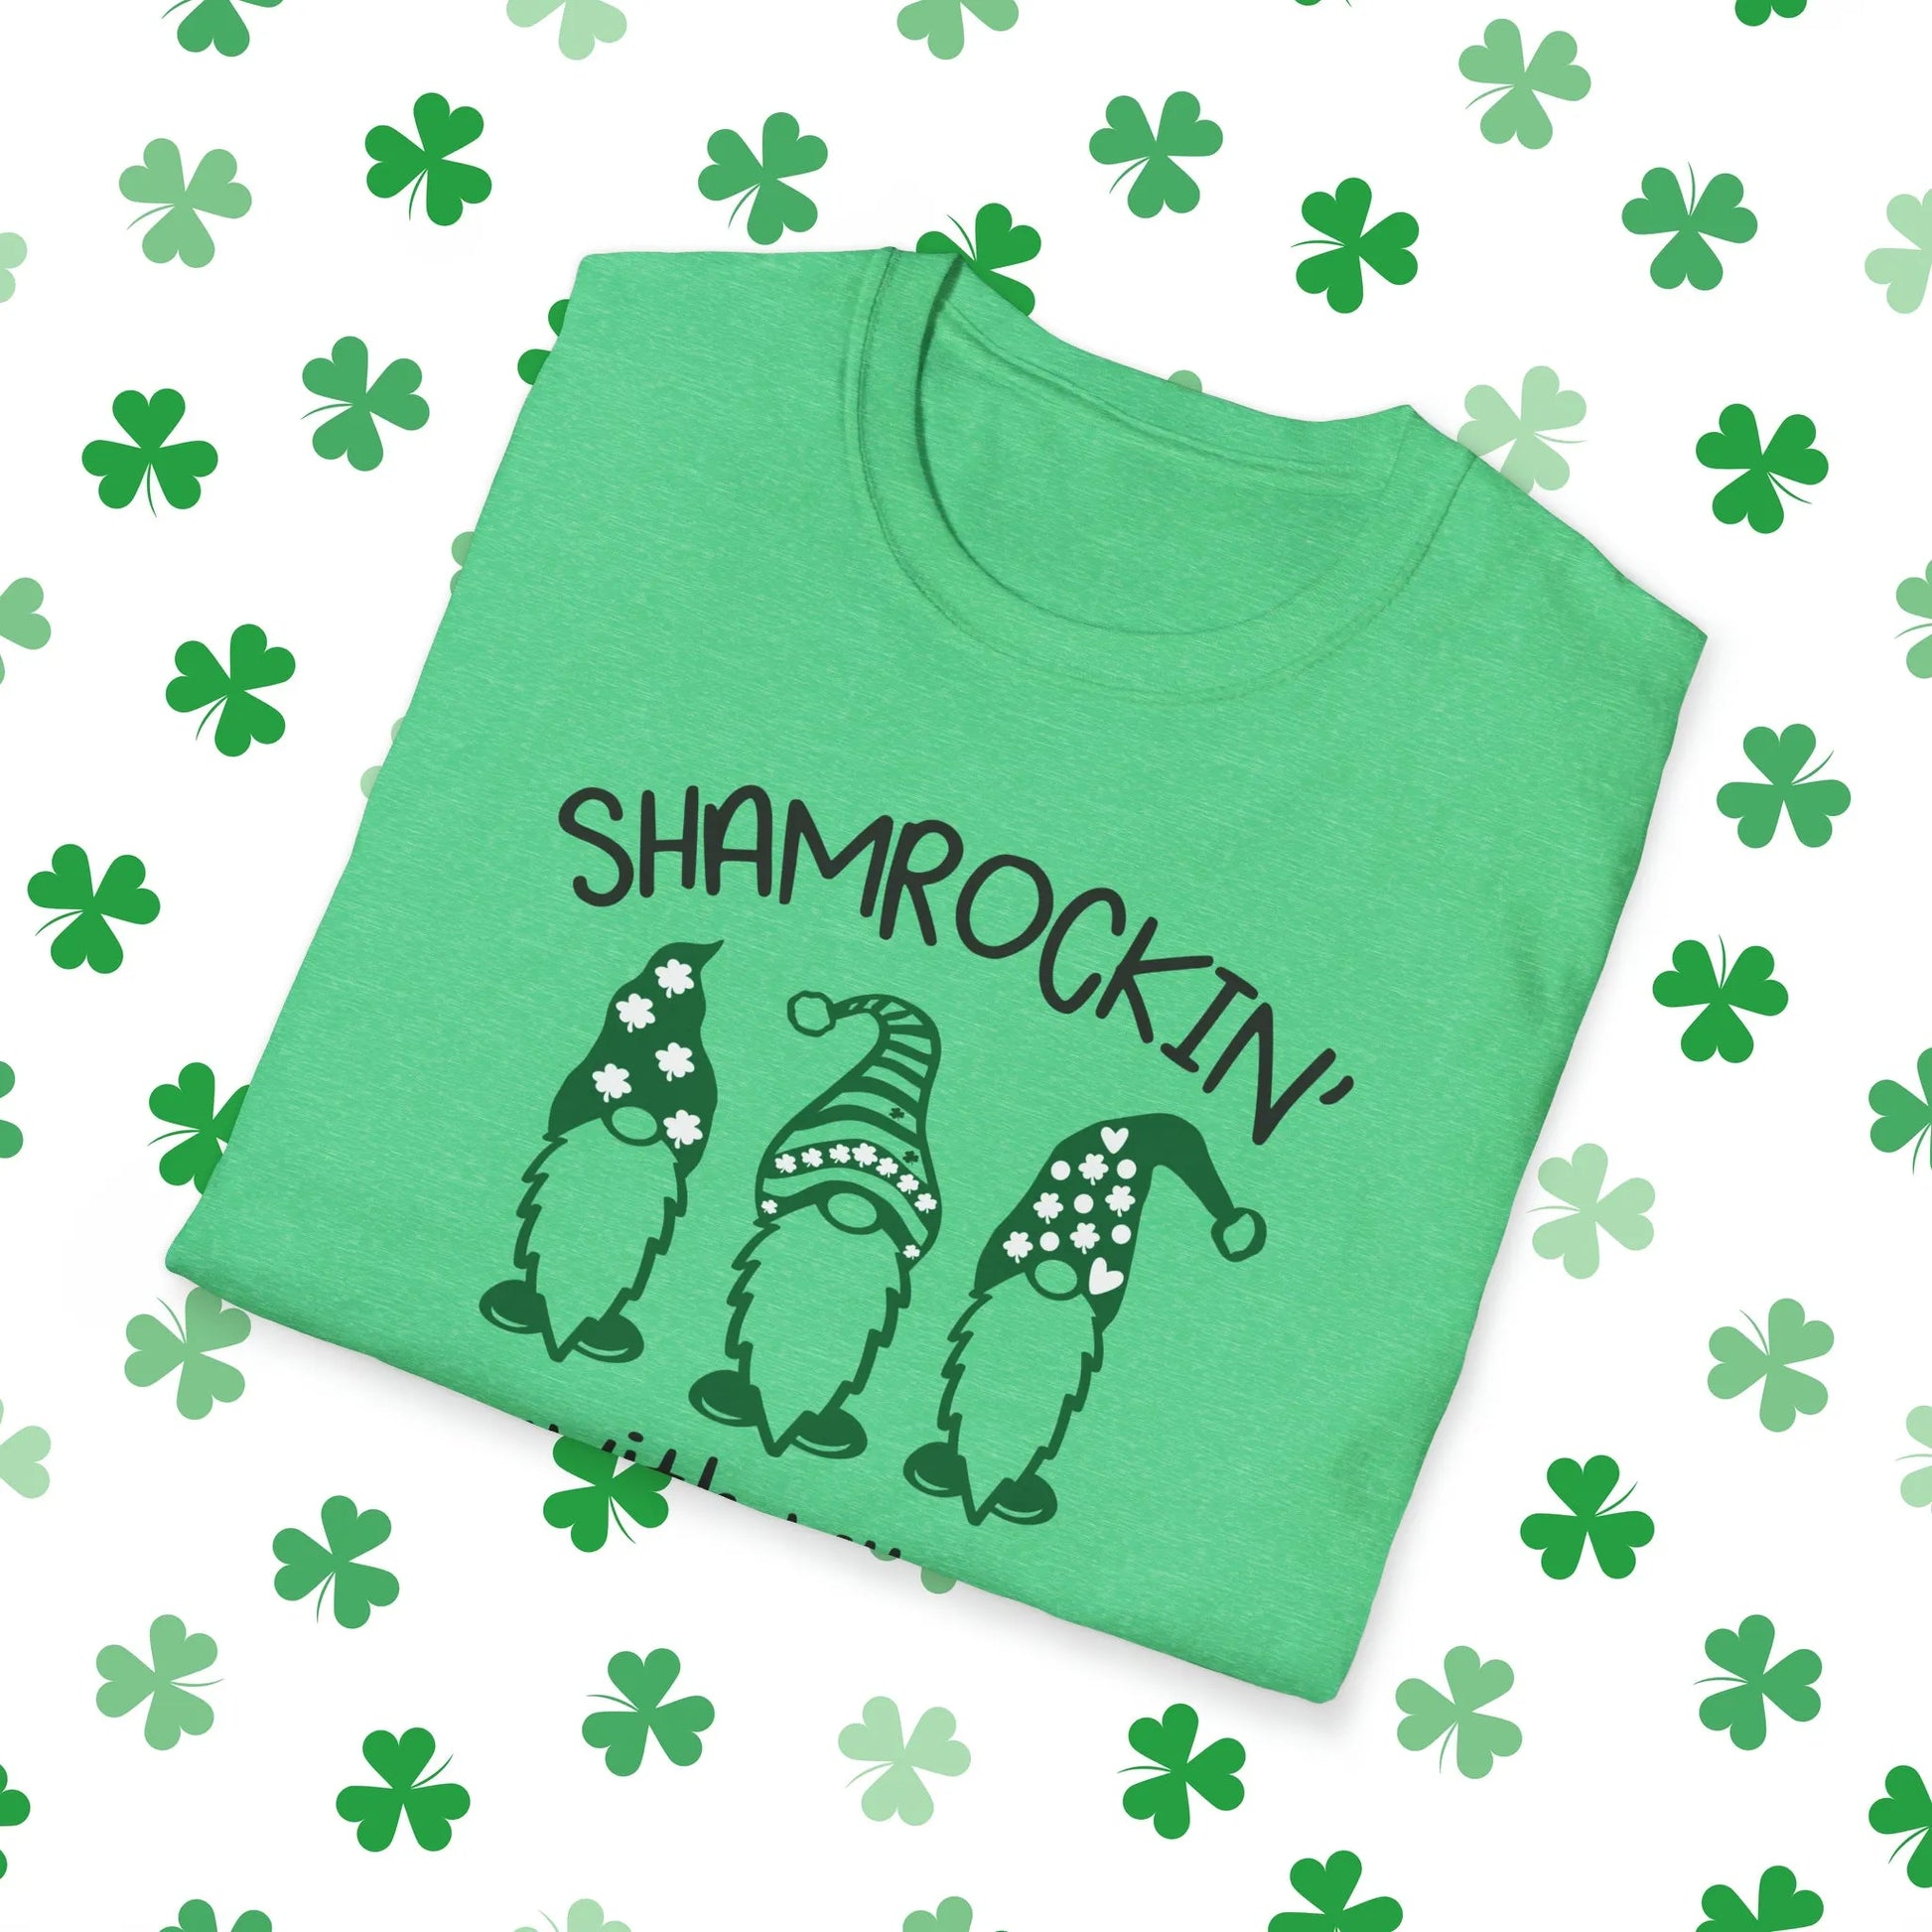 Shamrockin With My Gnomies St. Patrick's Day T-Shirt - Shamrockin With My Gnomies Shirt Green Folded